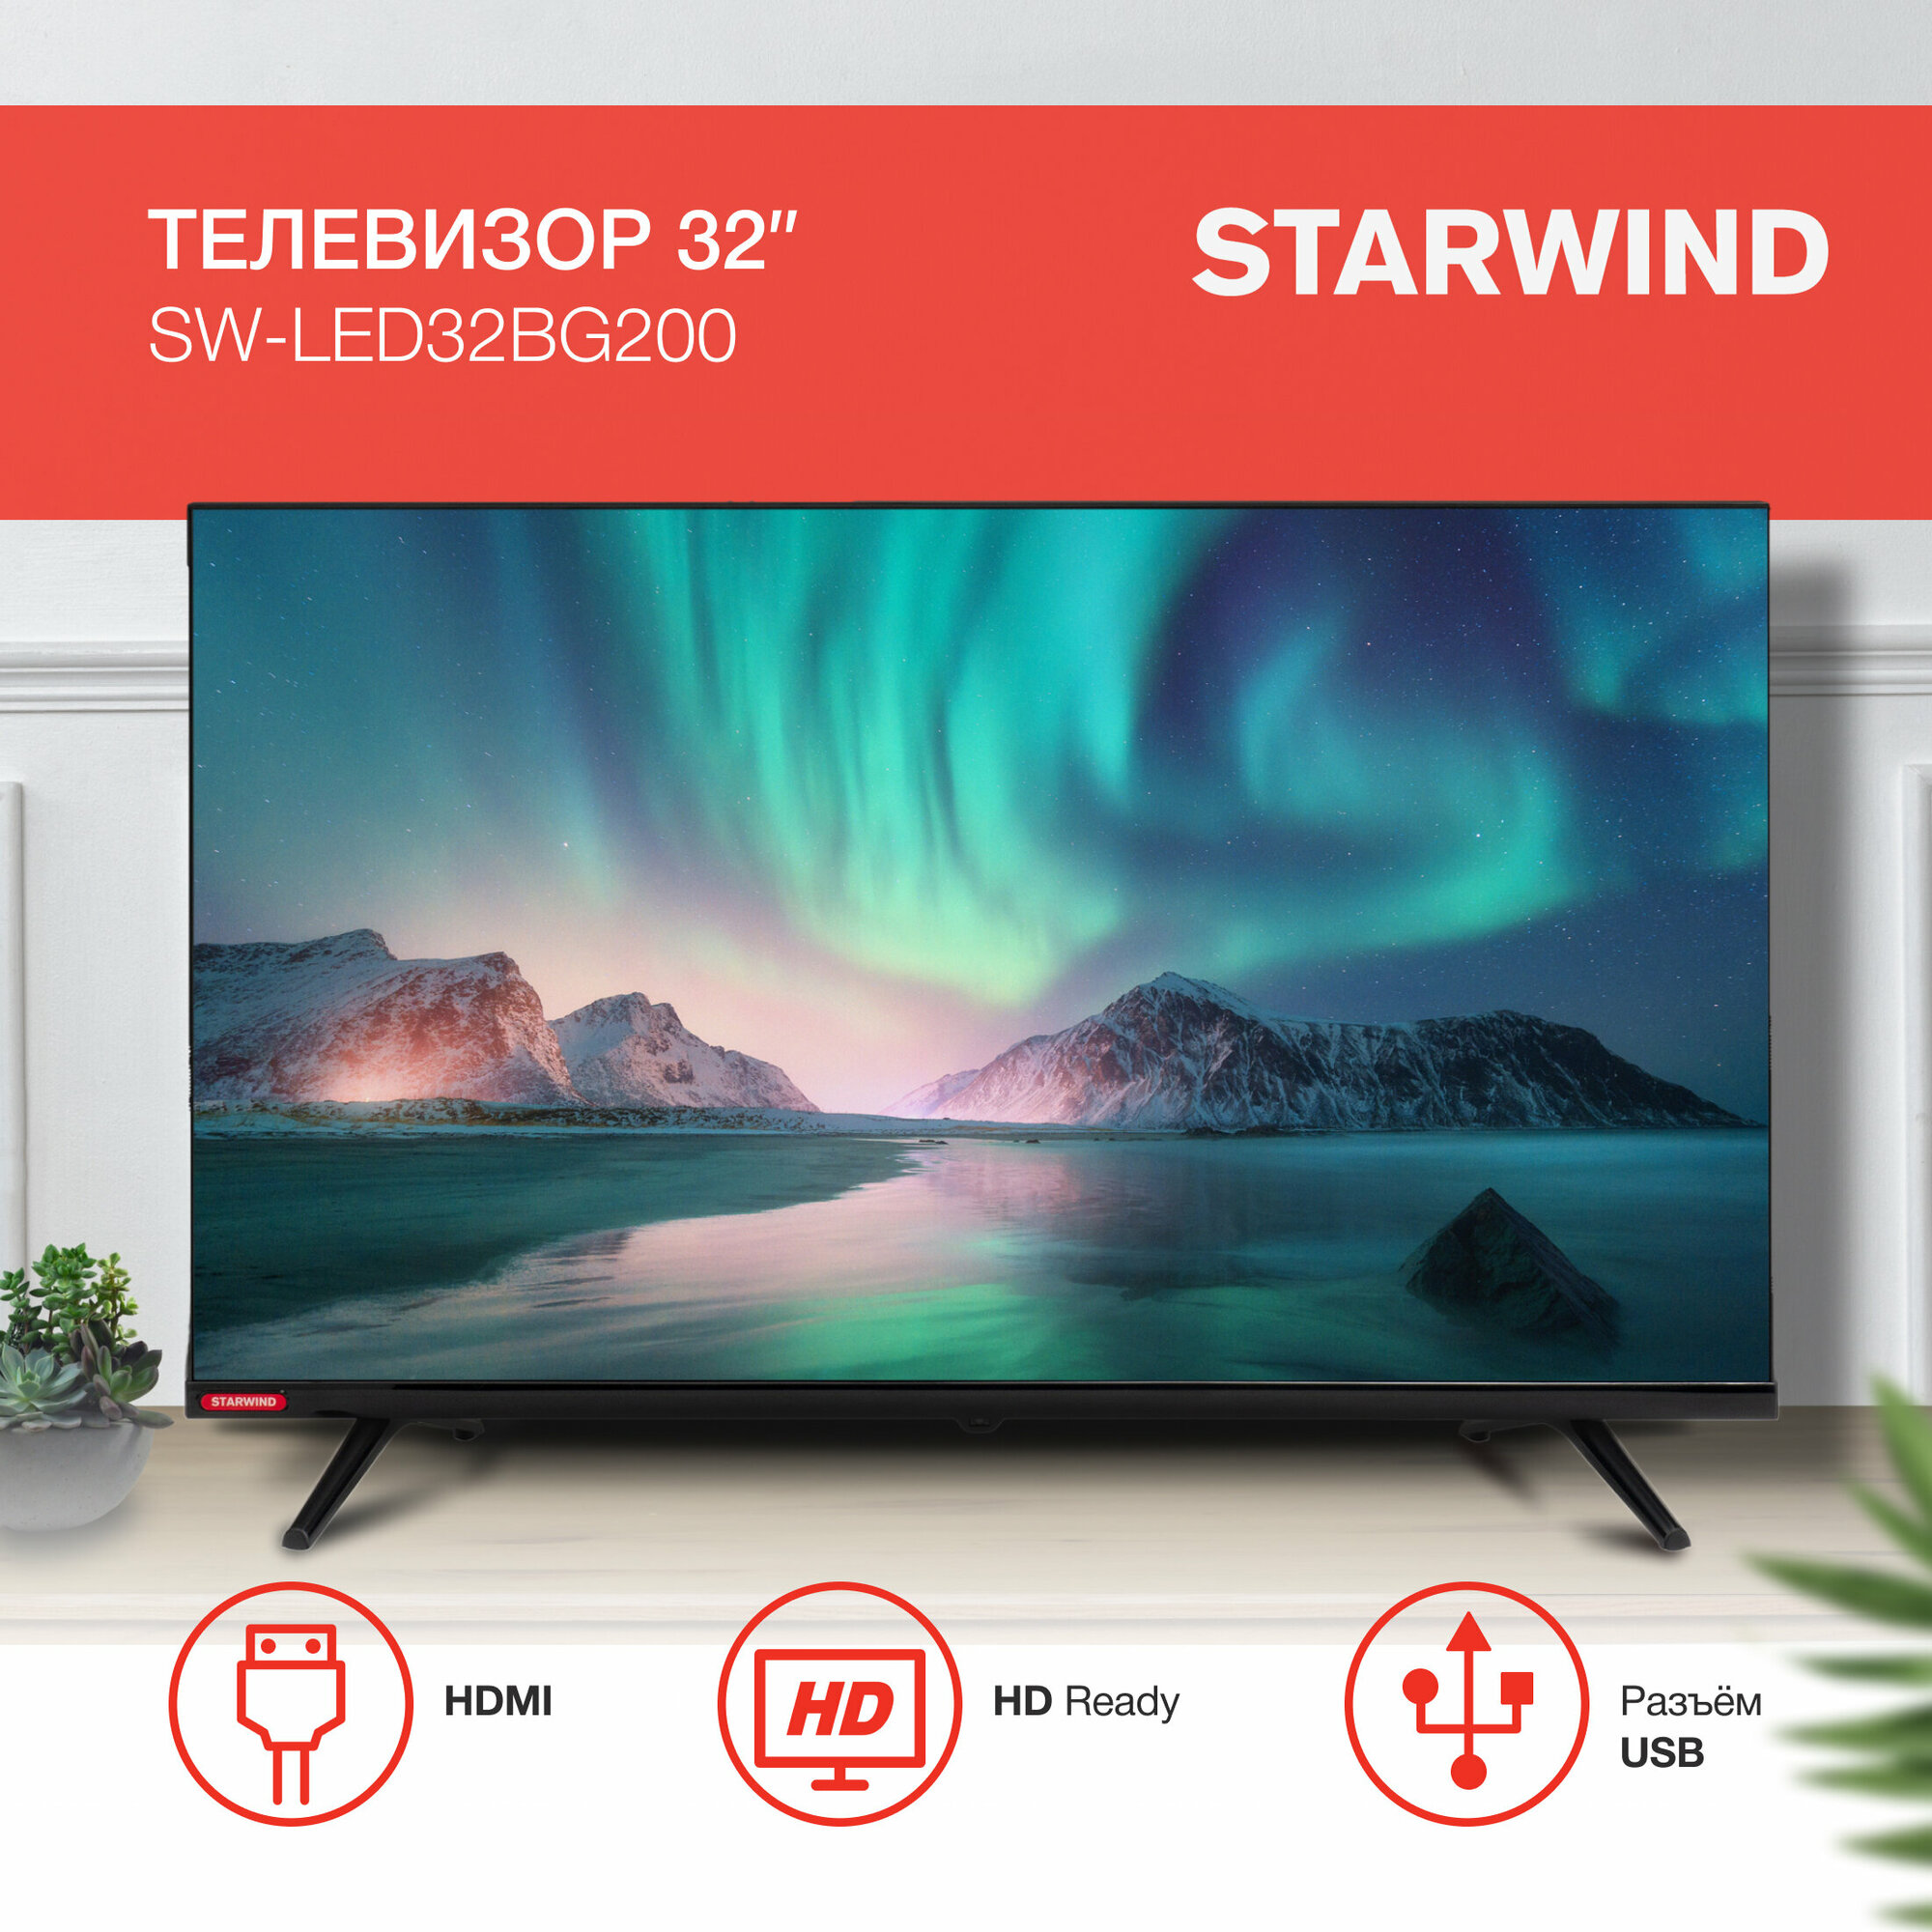 Телевизор LED Starwind 32" SW-LED32BG200 черный/HD/DVB-T/60Hz/DVB-T2/DVB-C/DVB-S/DVB-S2/USB